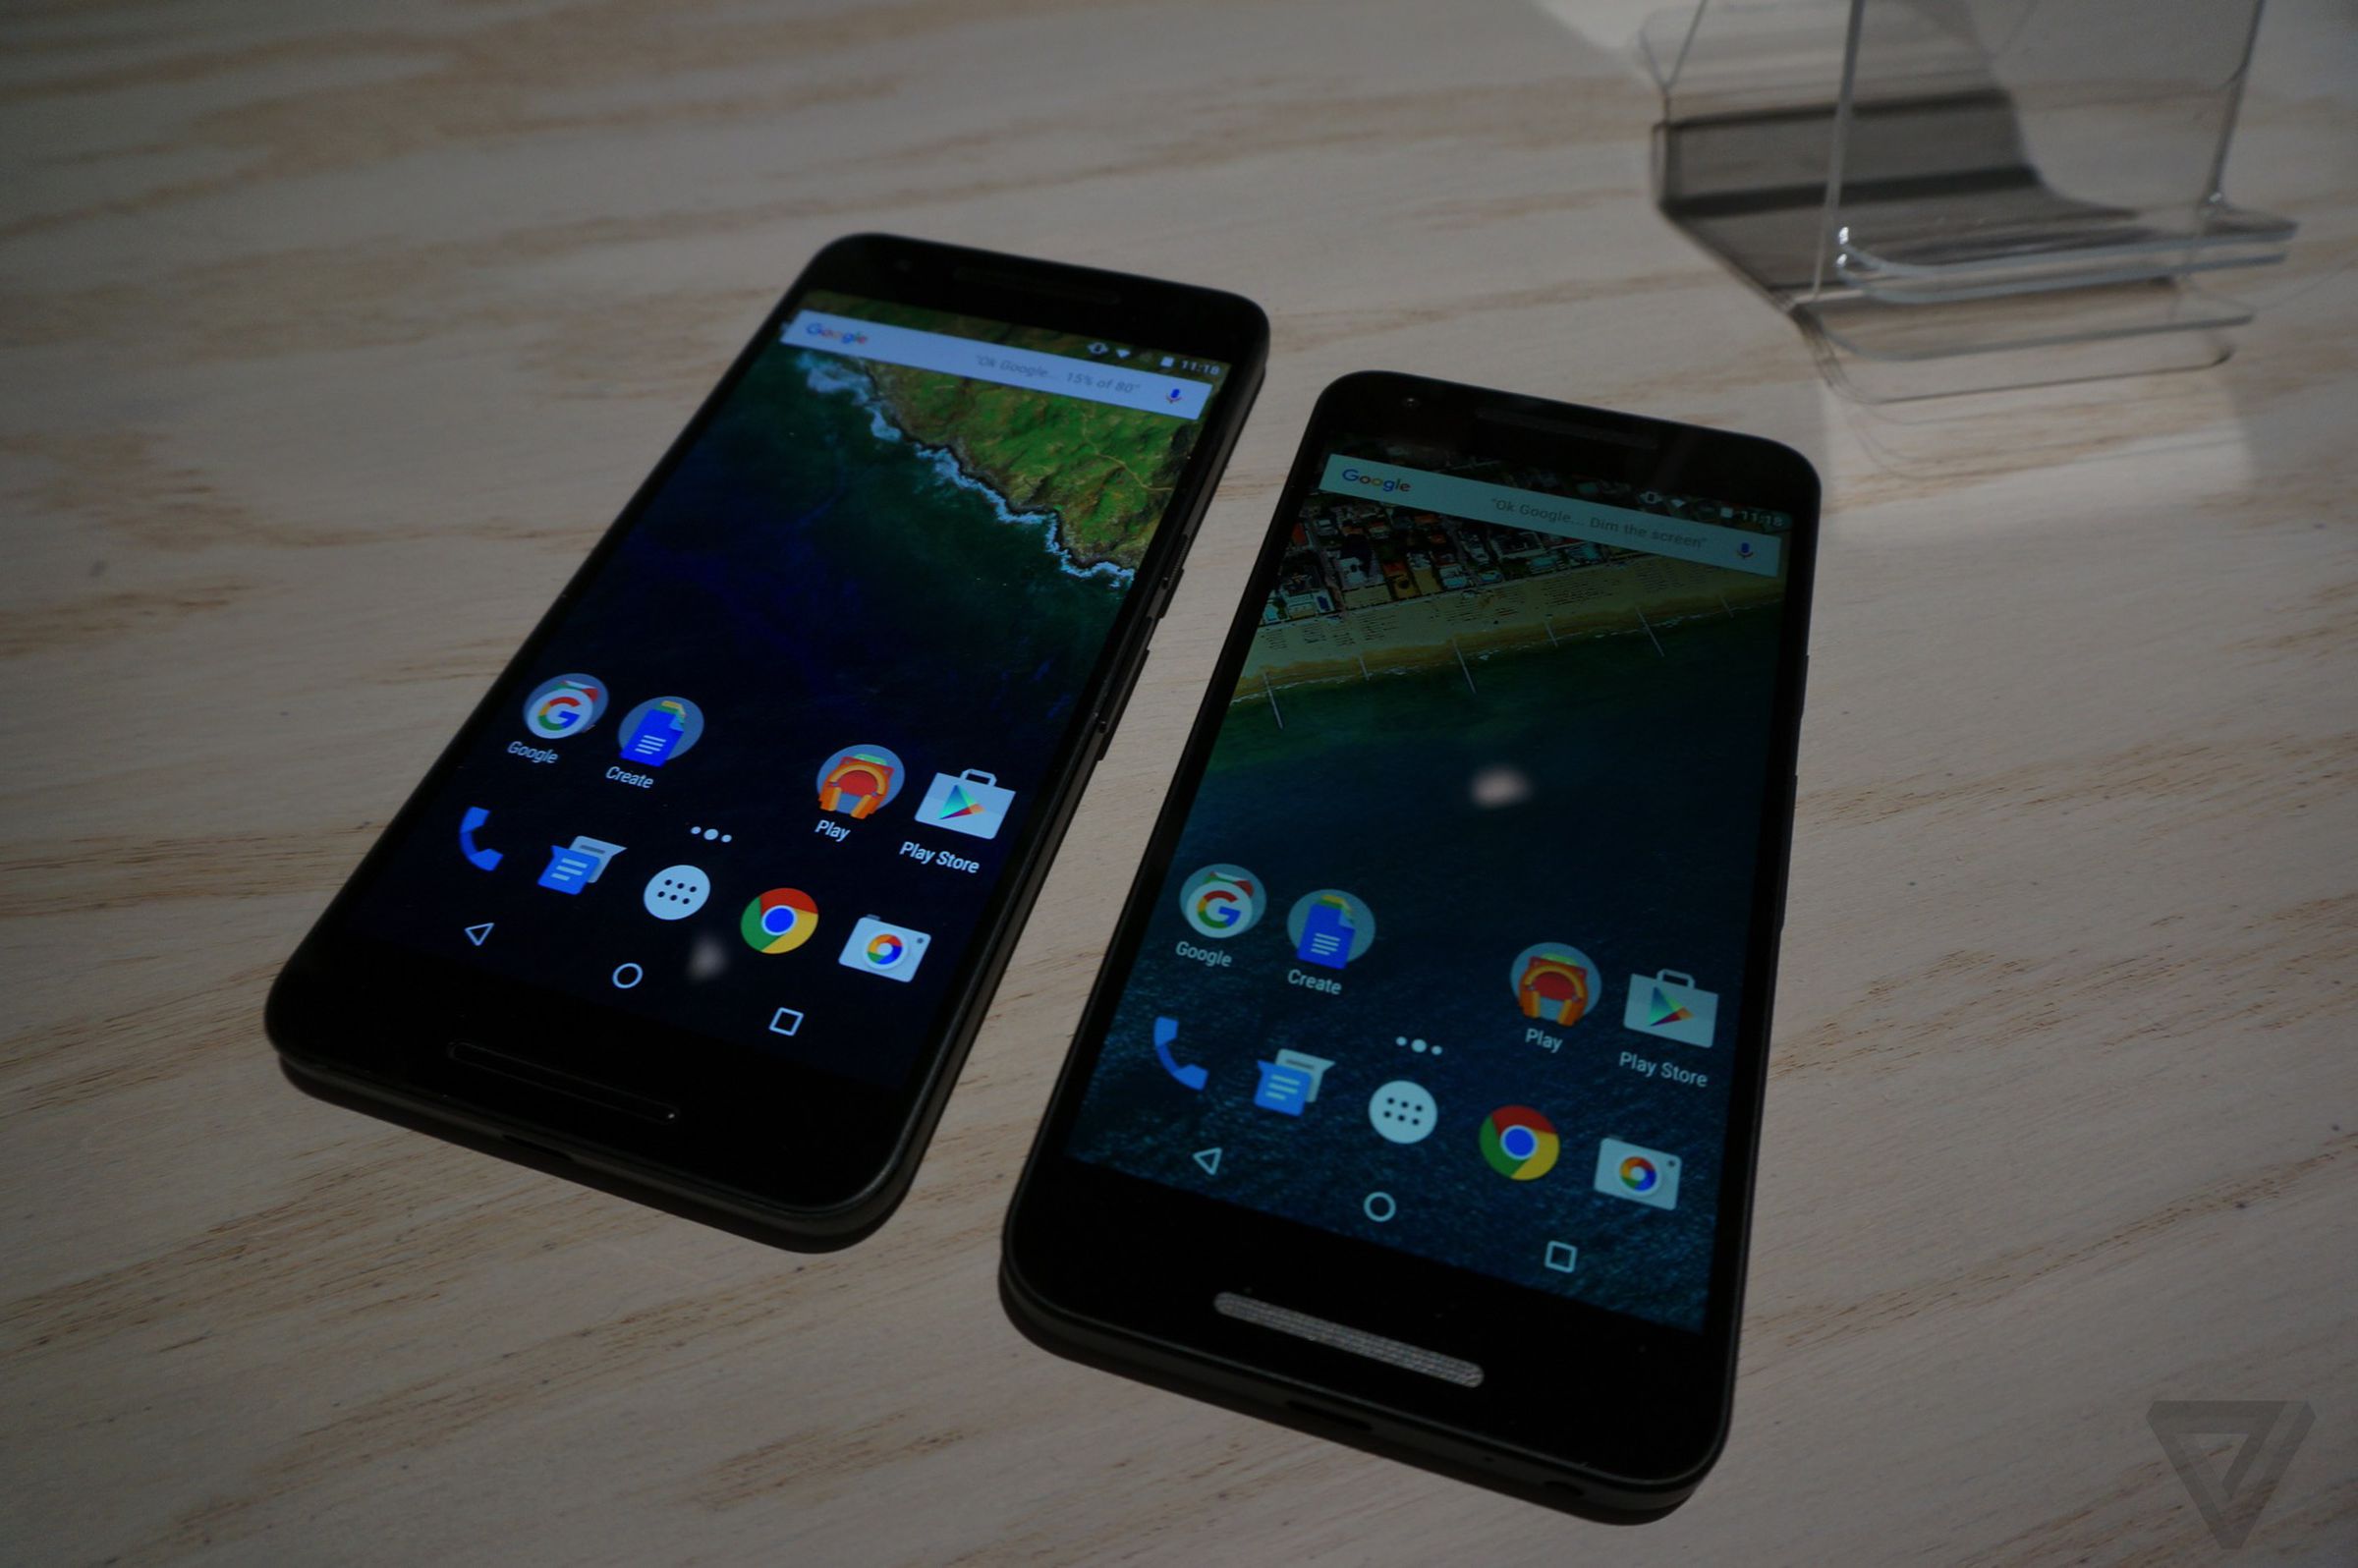 Nexus 5X hands-on photos